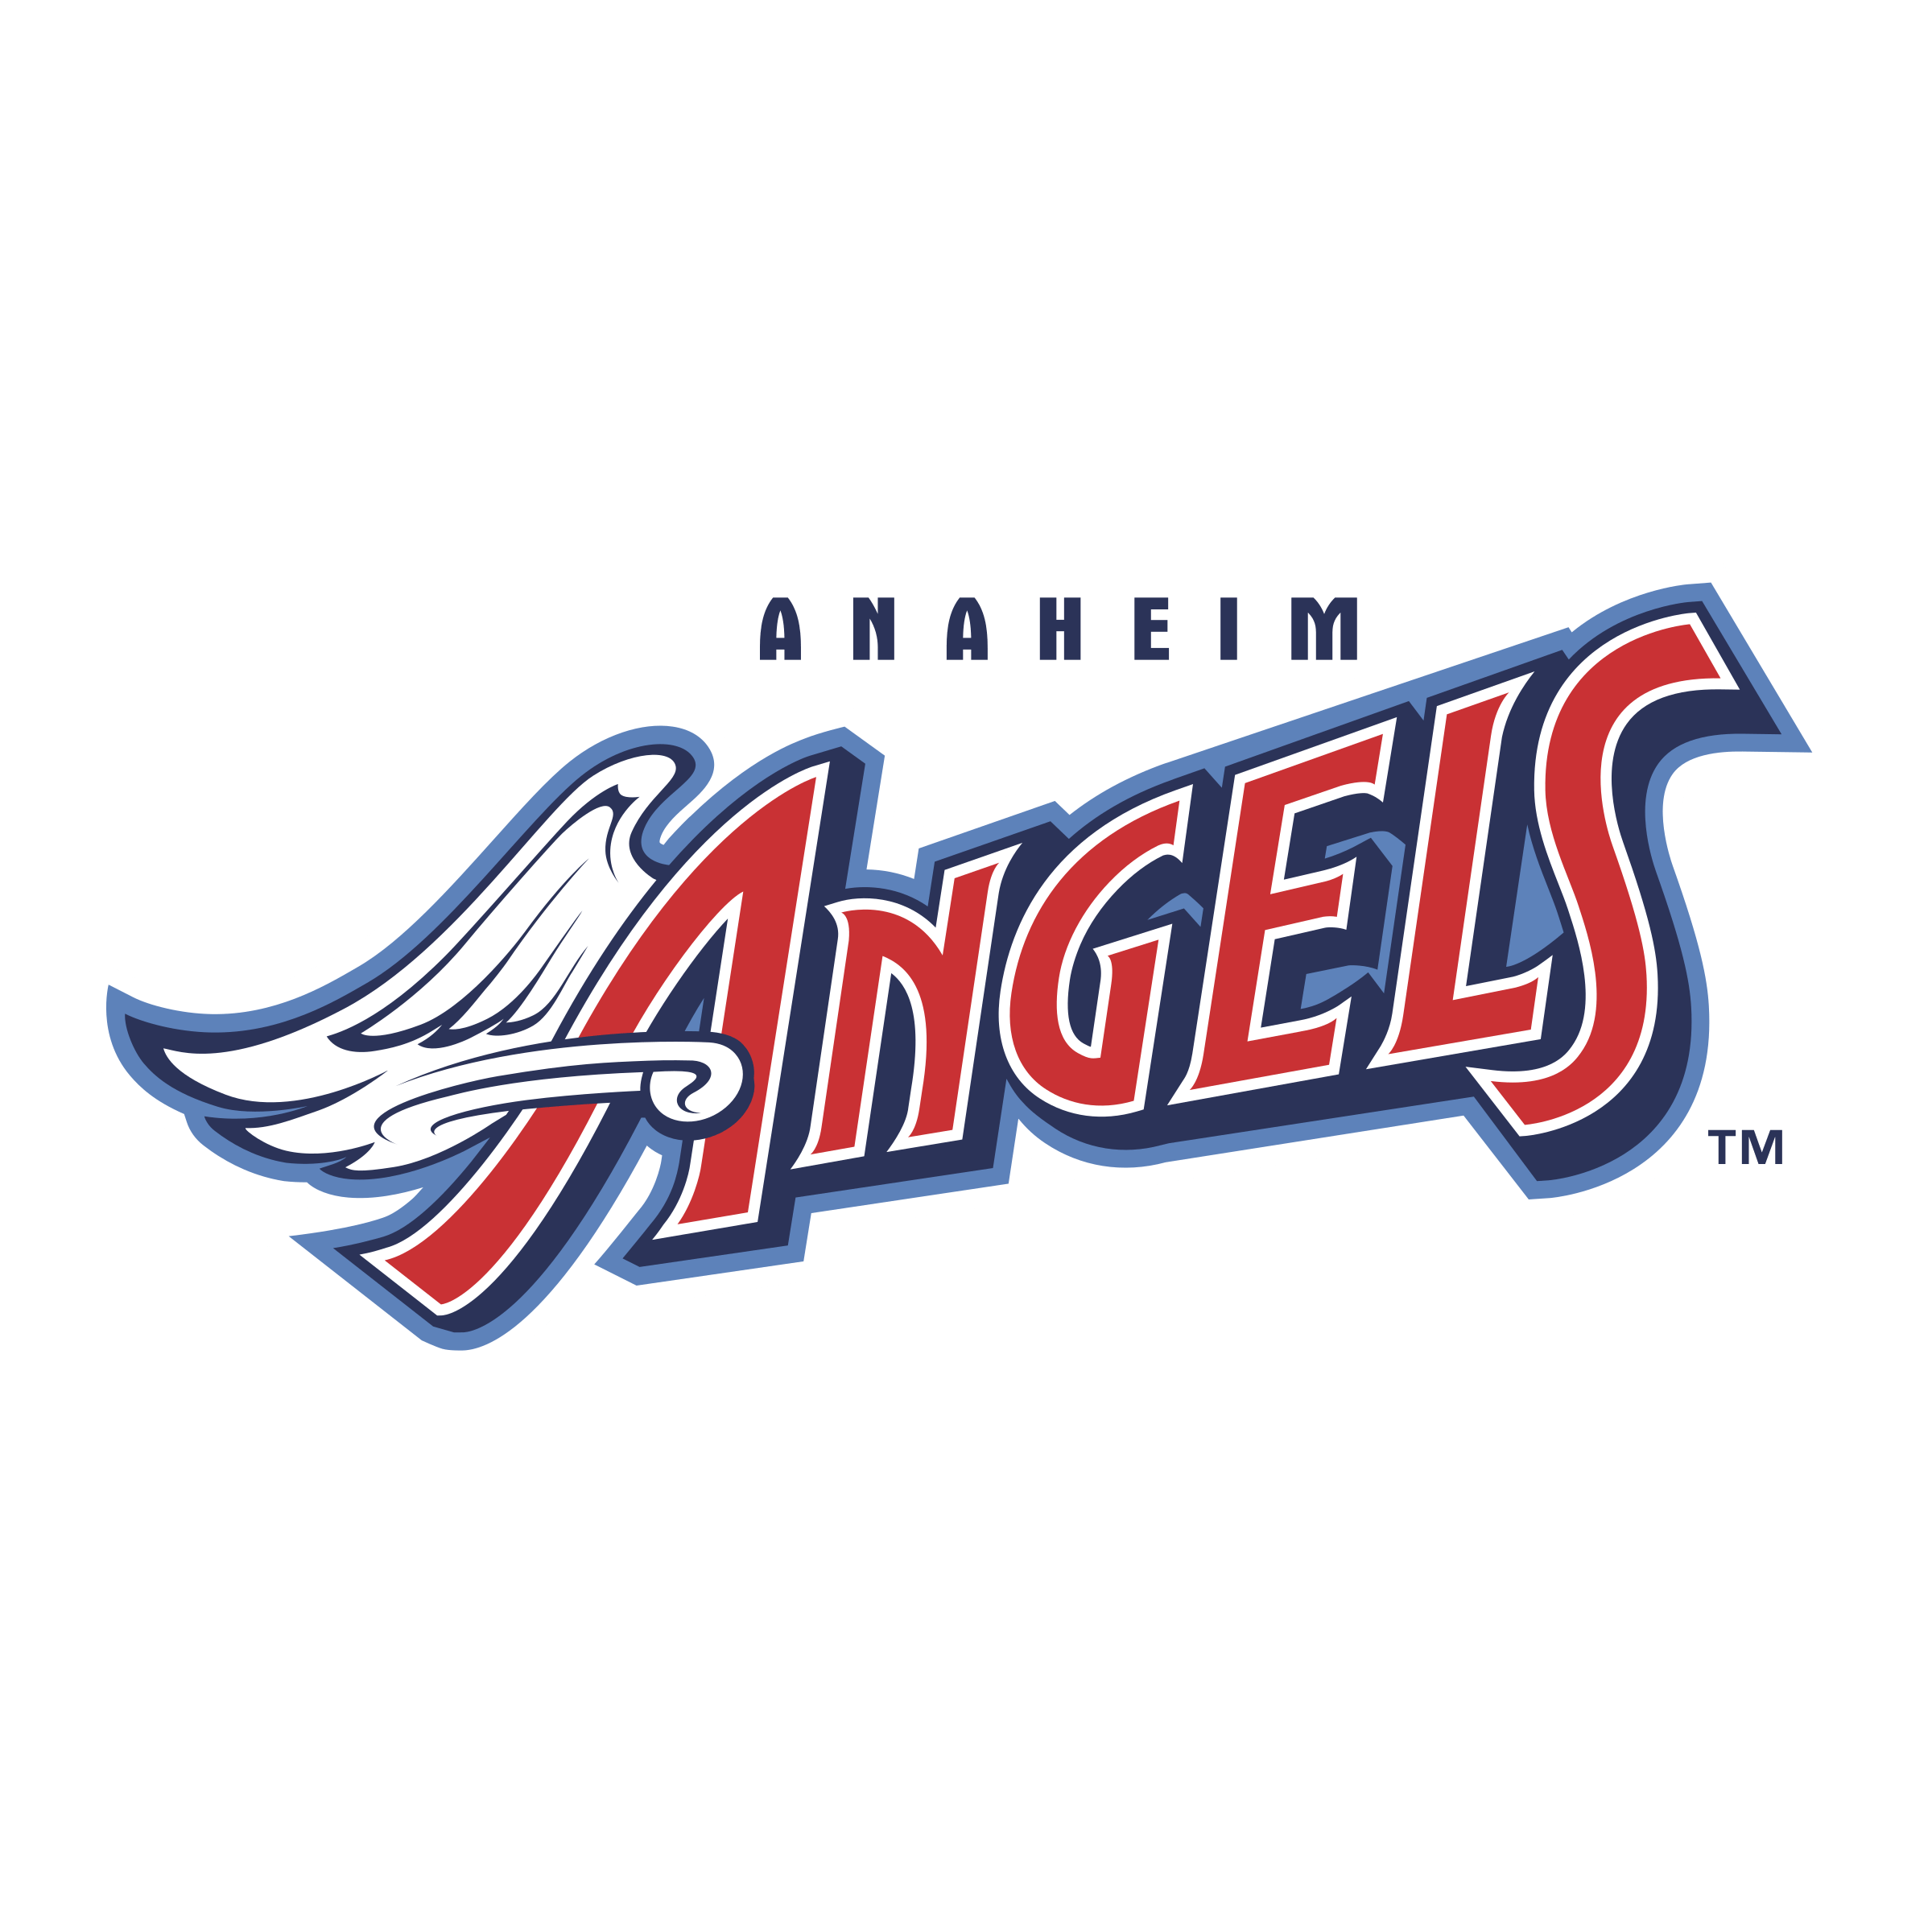 Anaheim Angels Logo - Anaheim Angels 02 Logo PNG Transparent & SVG Vector - Freebie Supply